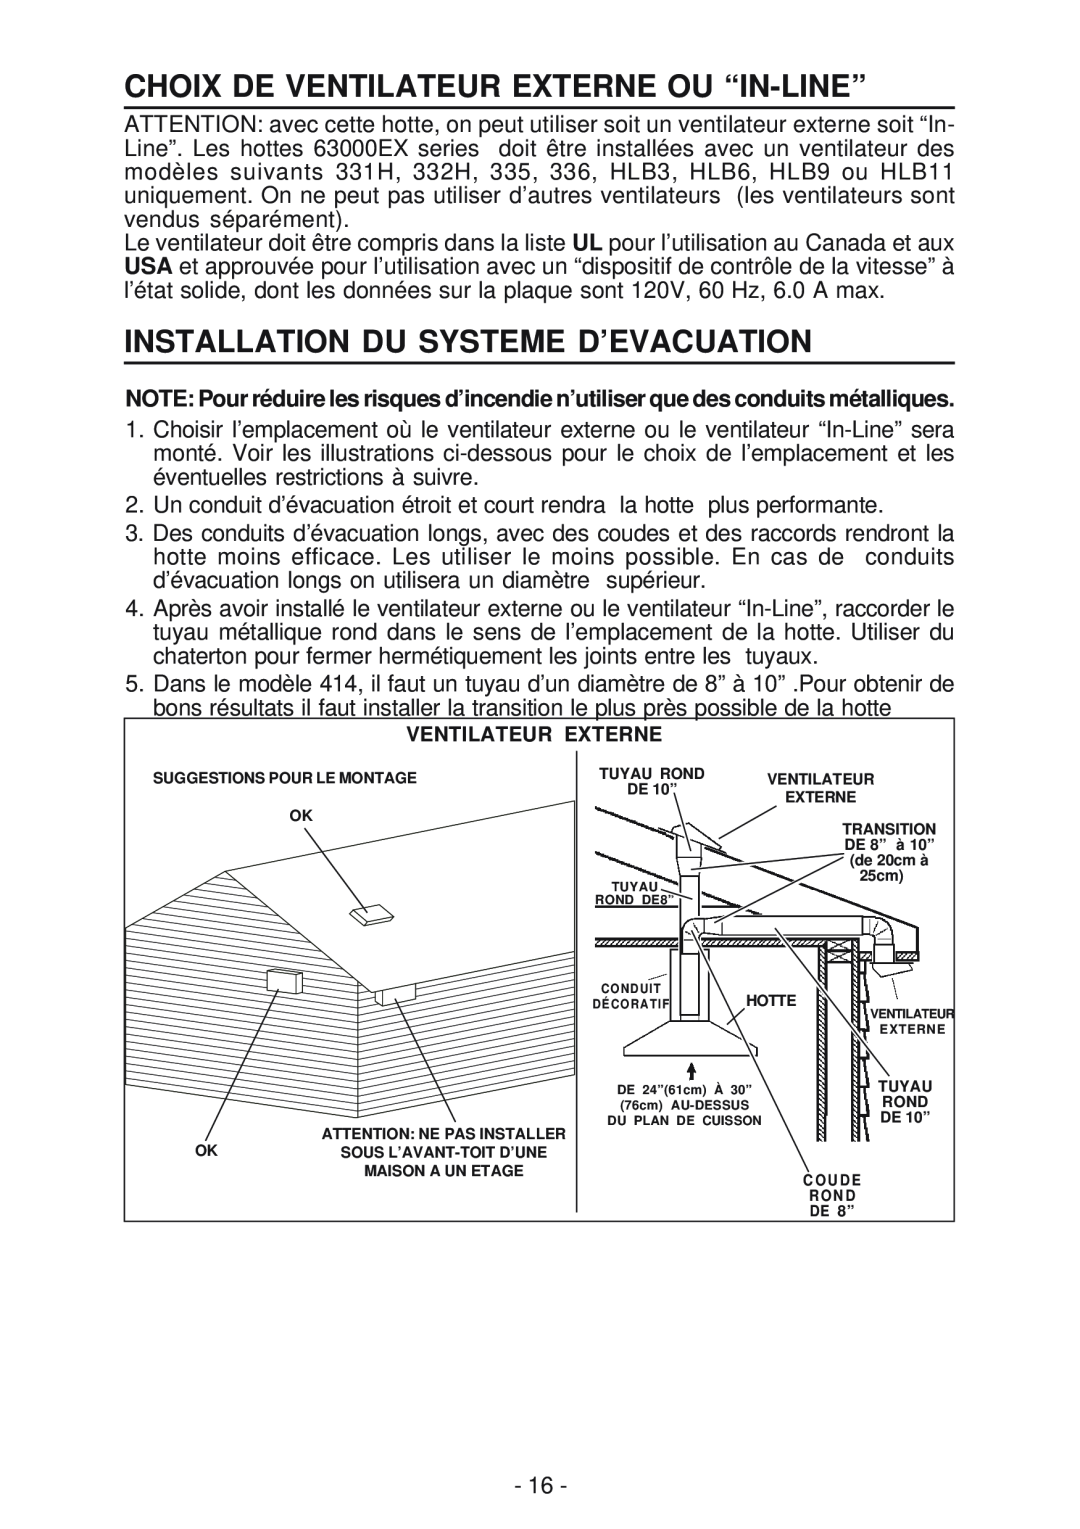 Broan 63000EX manual Choix De Ventilateur Externe Ou “In-Line”, Installation Du Systeme D’Evacuation 